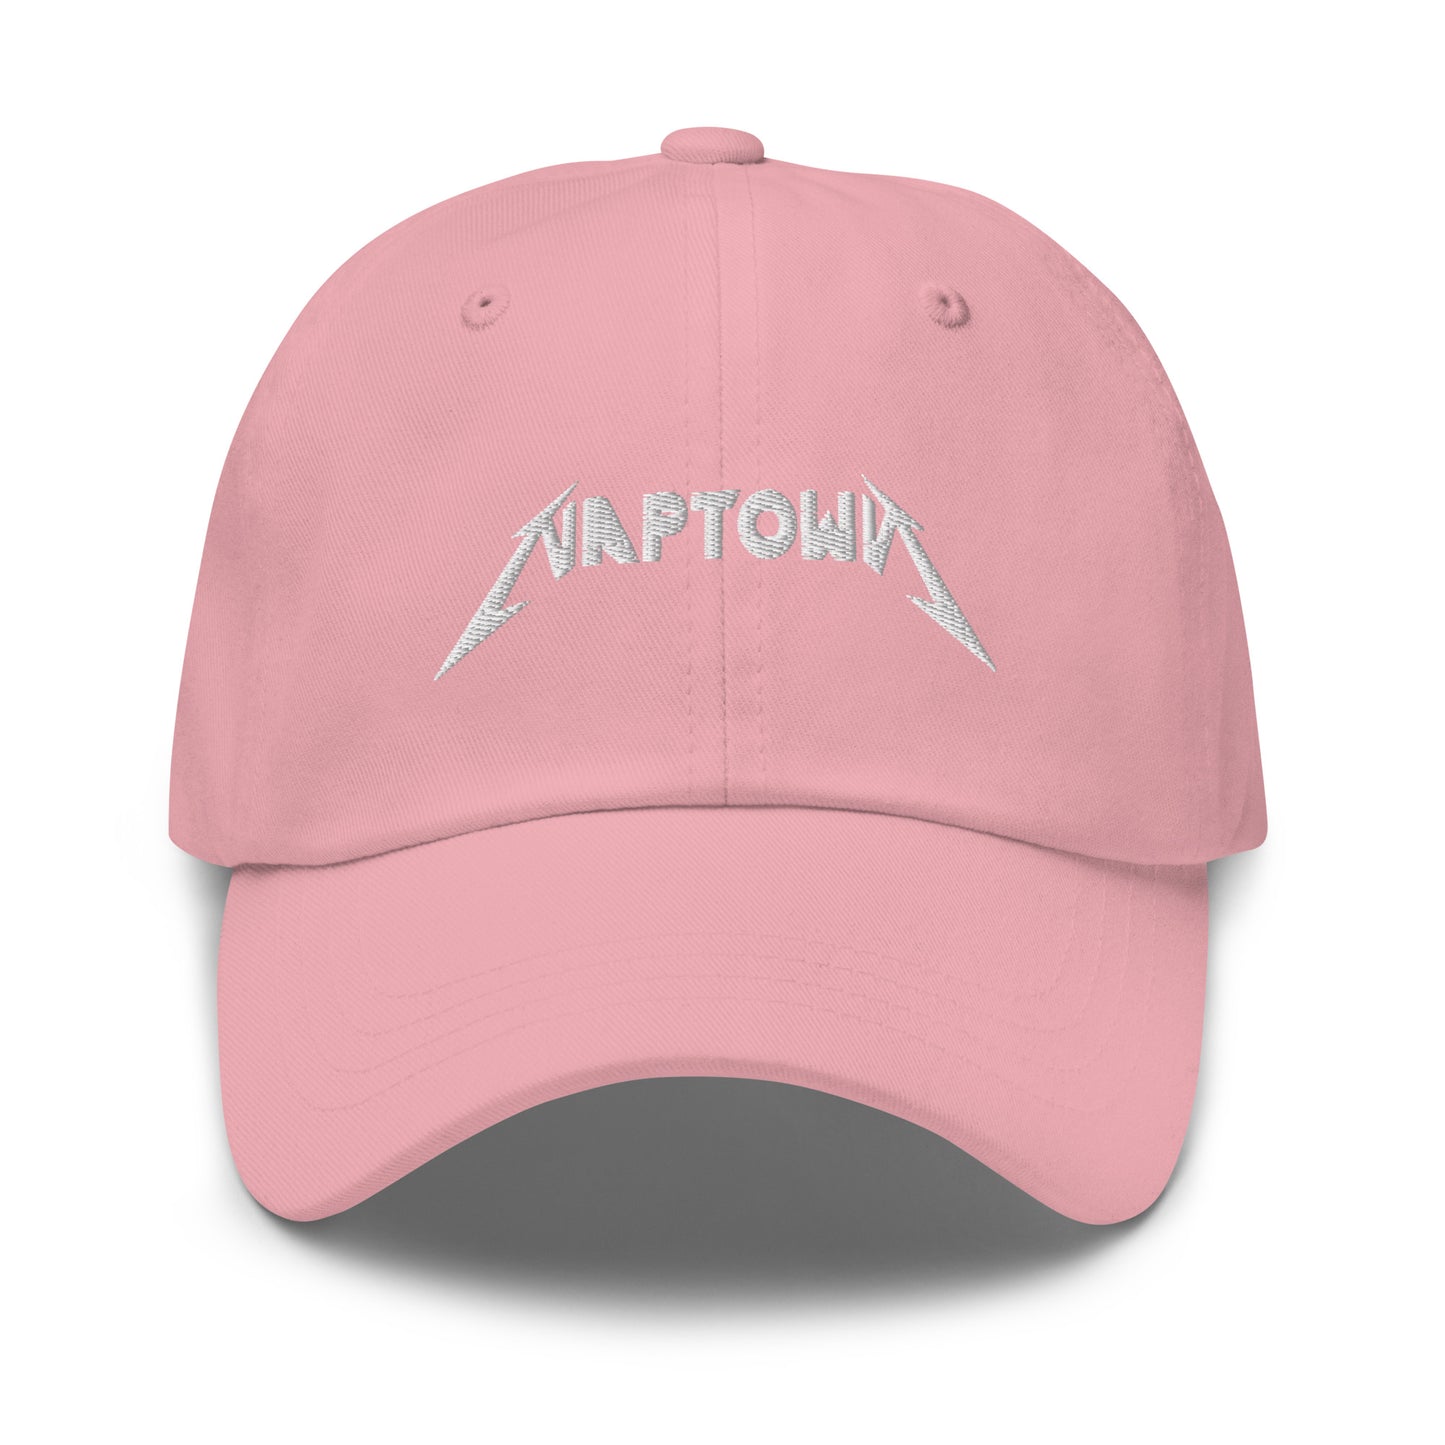 NAPTOWN - Daddy Hat